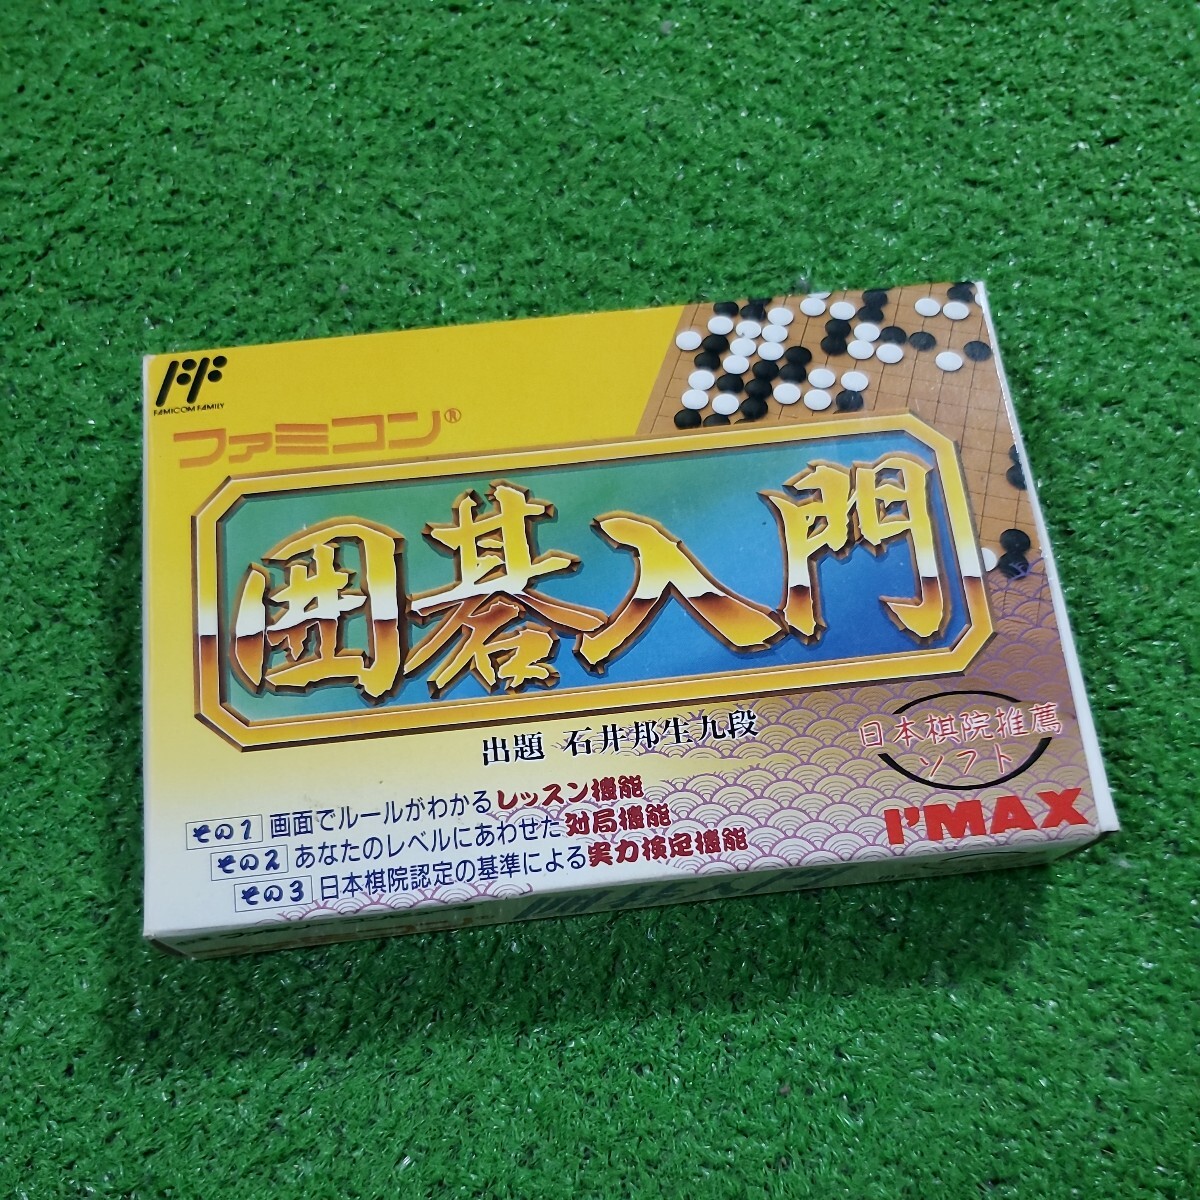 FC Famicom кассета soft Го введение рабочее состояние подтверждено коробка мнение есть коробка инструкция редкий товар Family компьютер стоимость доставки 230 иен 